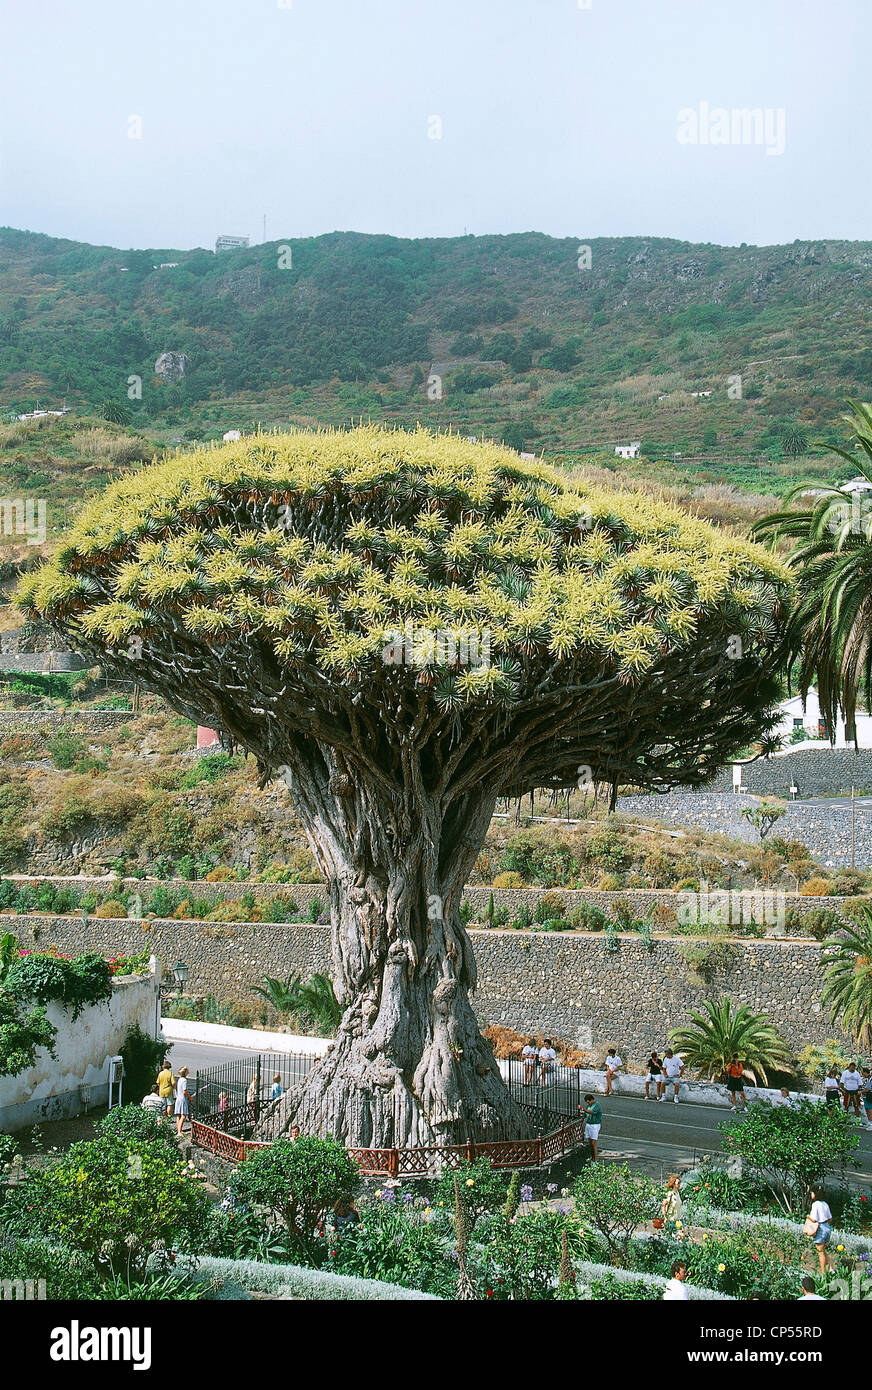 España - Islas Canarias - Tenerife. Icod de los vinos, el original dragón  (Dracaena draco), llamado Dragón milenio Fotografía de stock - Alamy